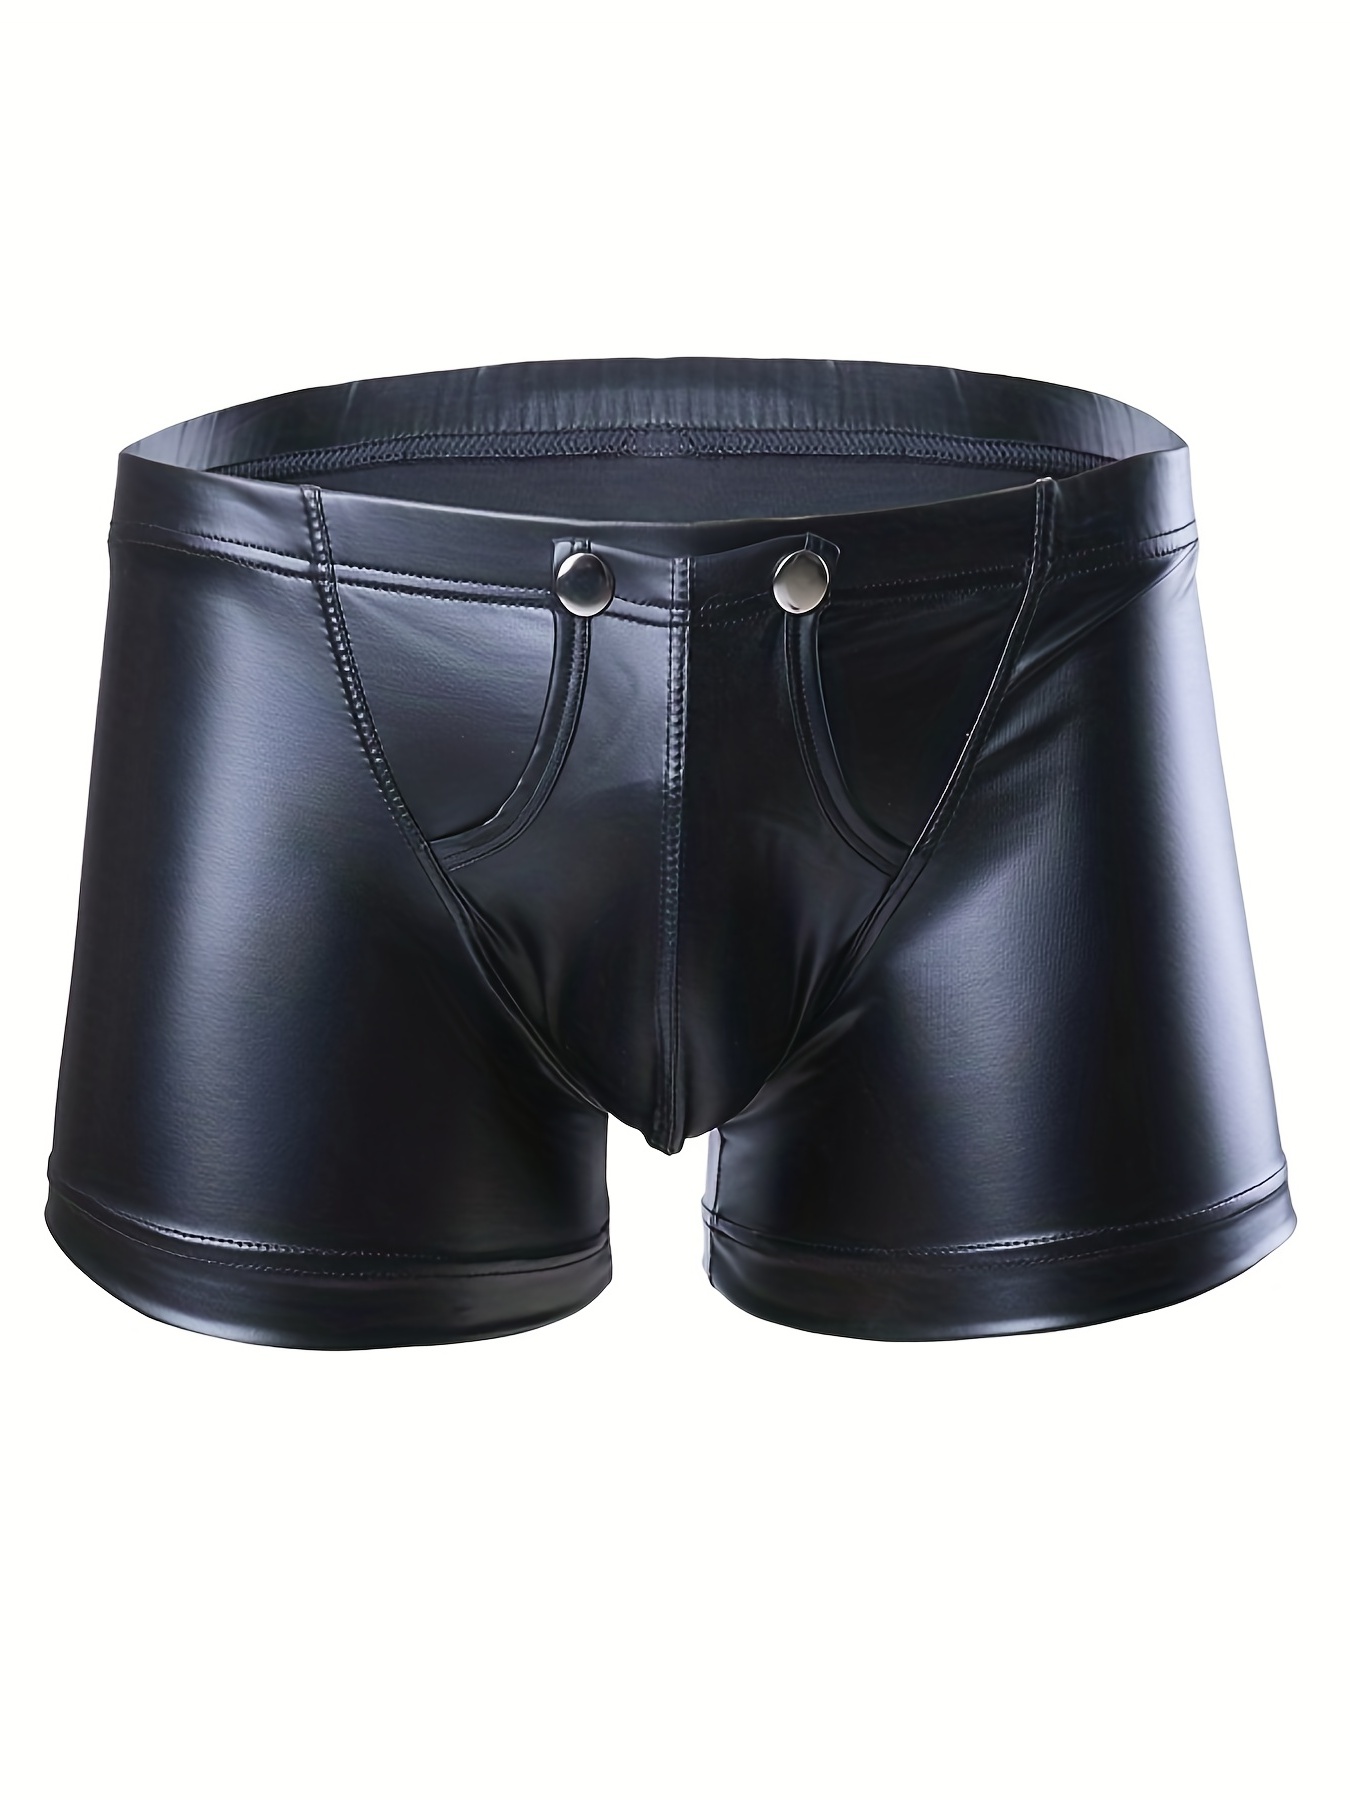 Men's Sexy Underwear Bulge Pouch Underpants Low Rise Trunks Short Leg Boxer  Briefs 